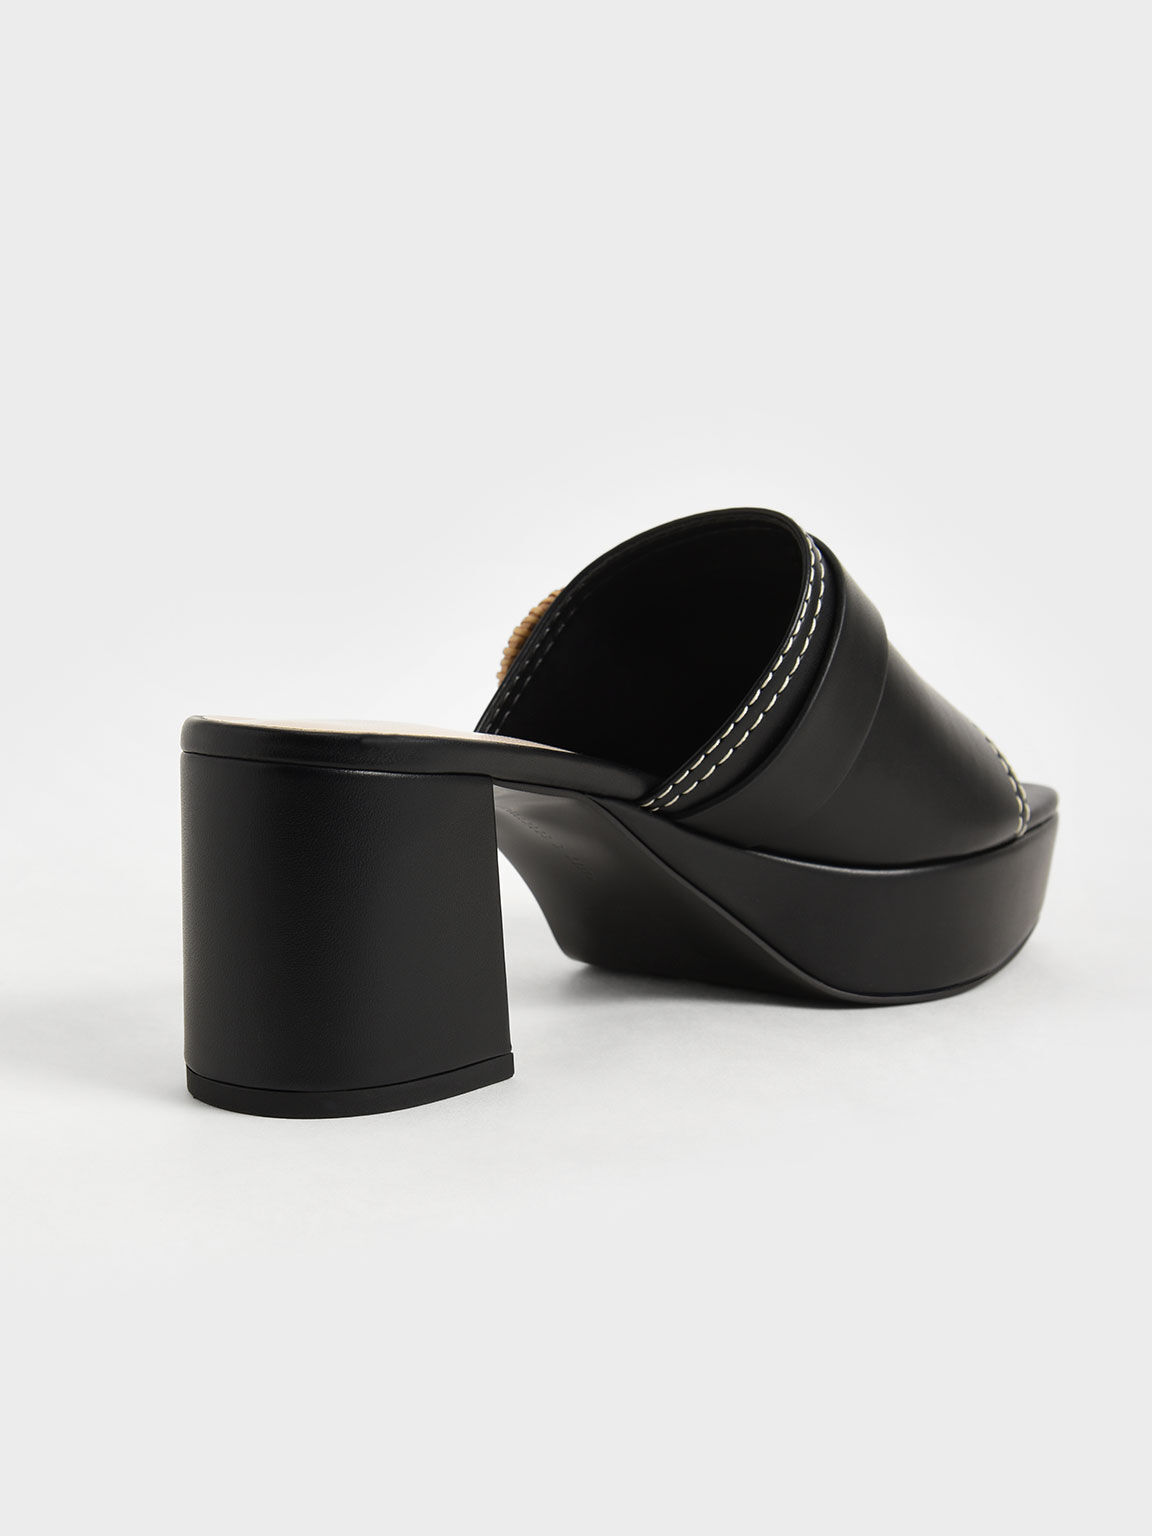 編織圓釦厚底拖鞋, 黑色, hi-res